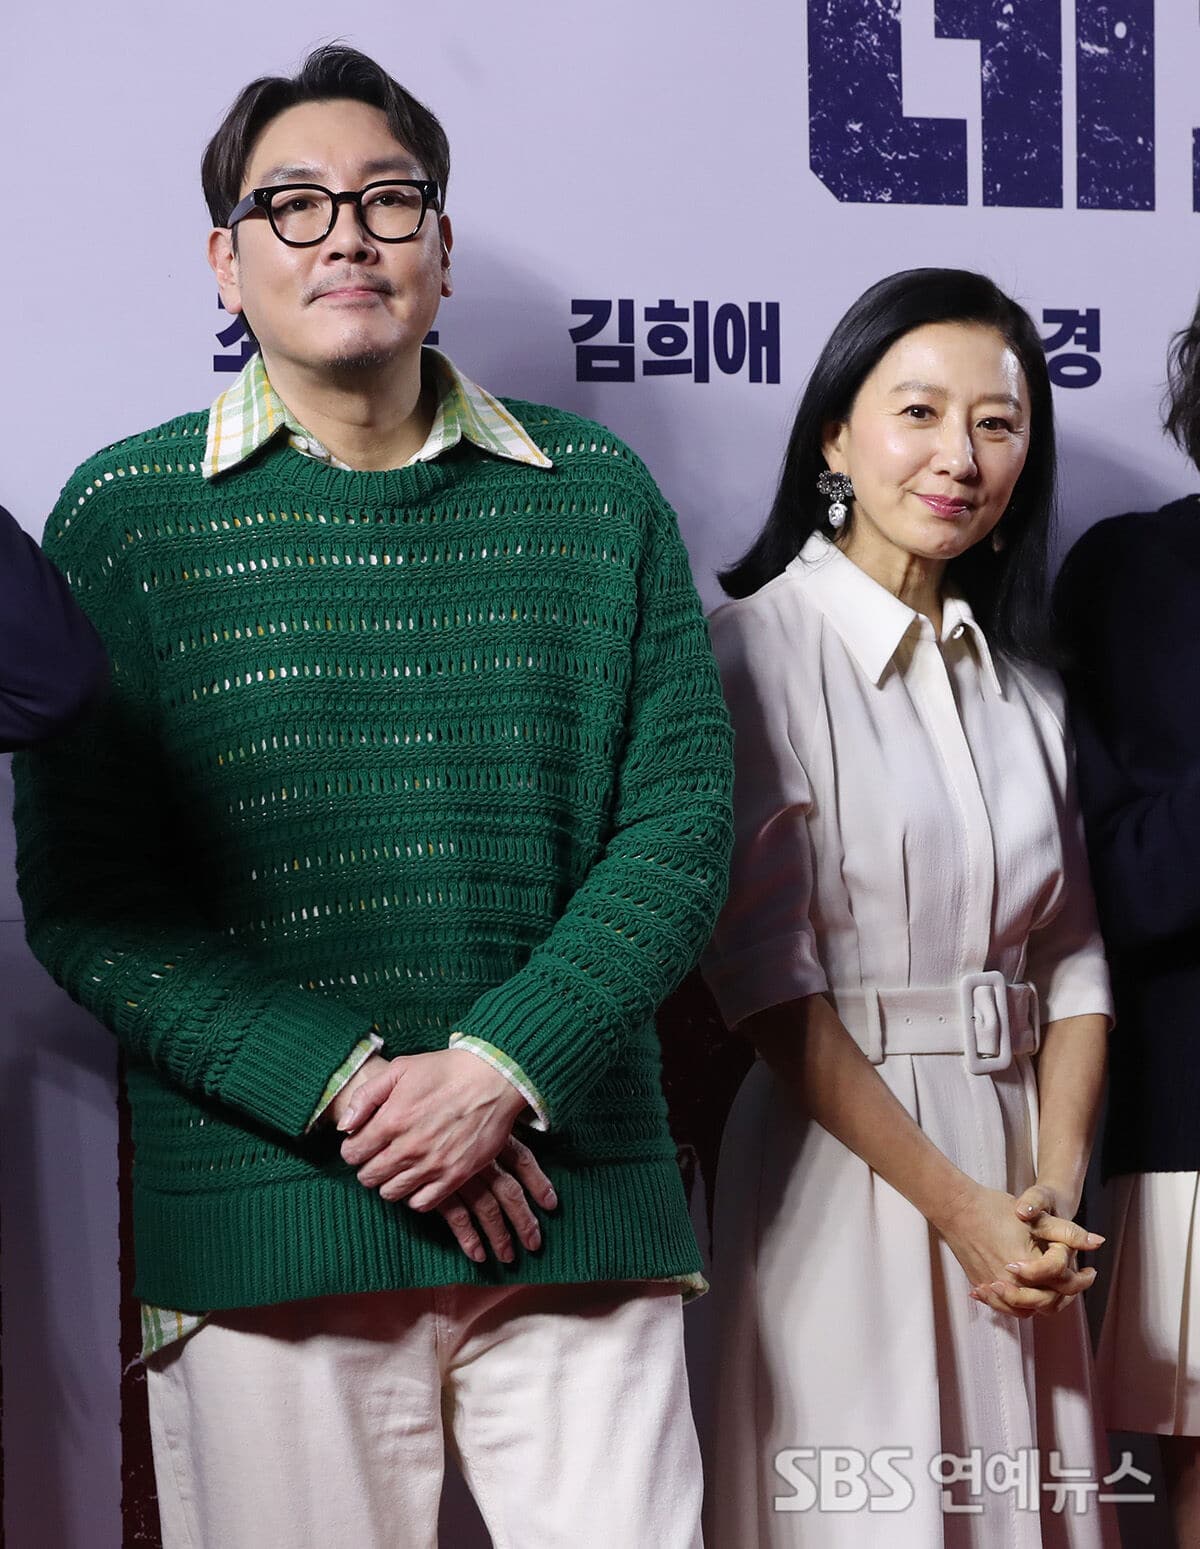 [ФОТО] Актеры Ю Сын Хо, Ом Чон Хва, Ли Ён Хи и другие на VIP-премьере фильма «Мертвец»